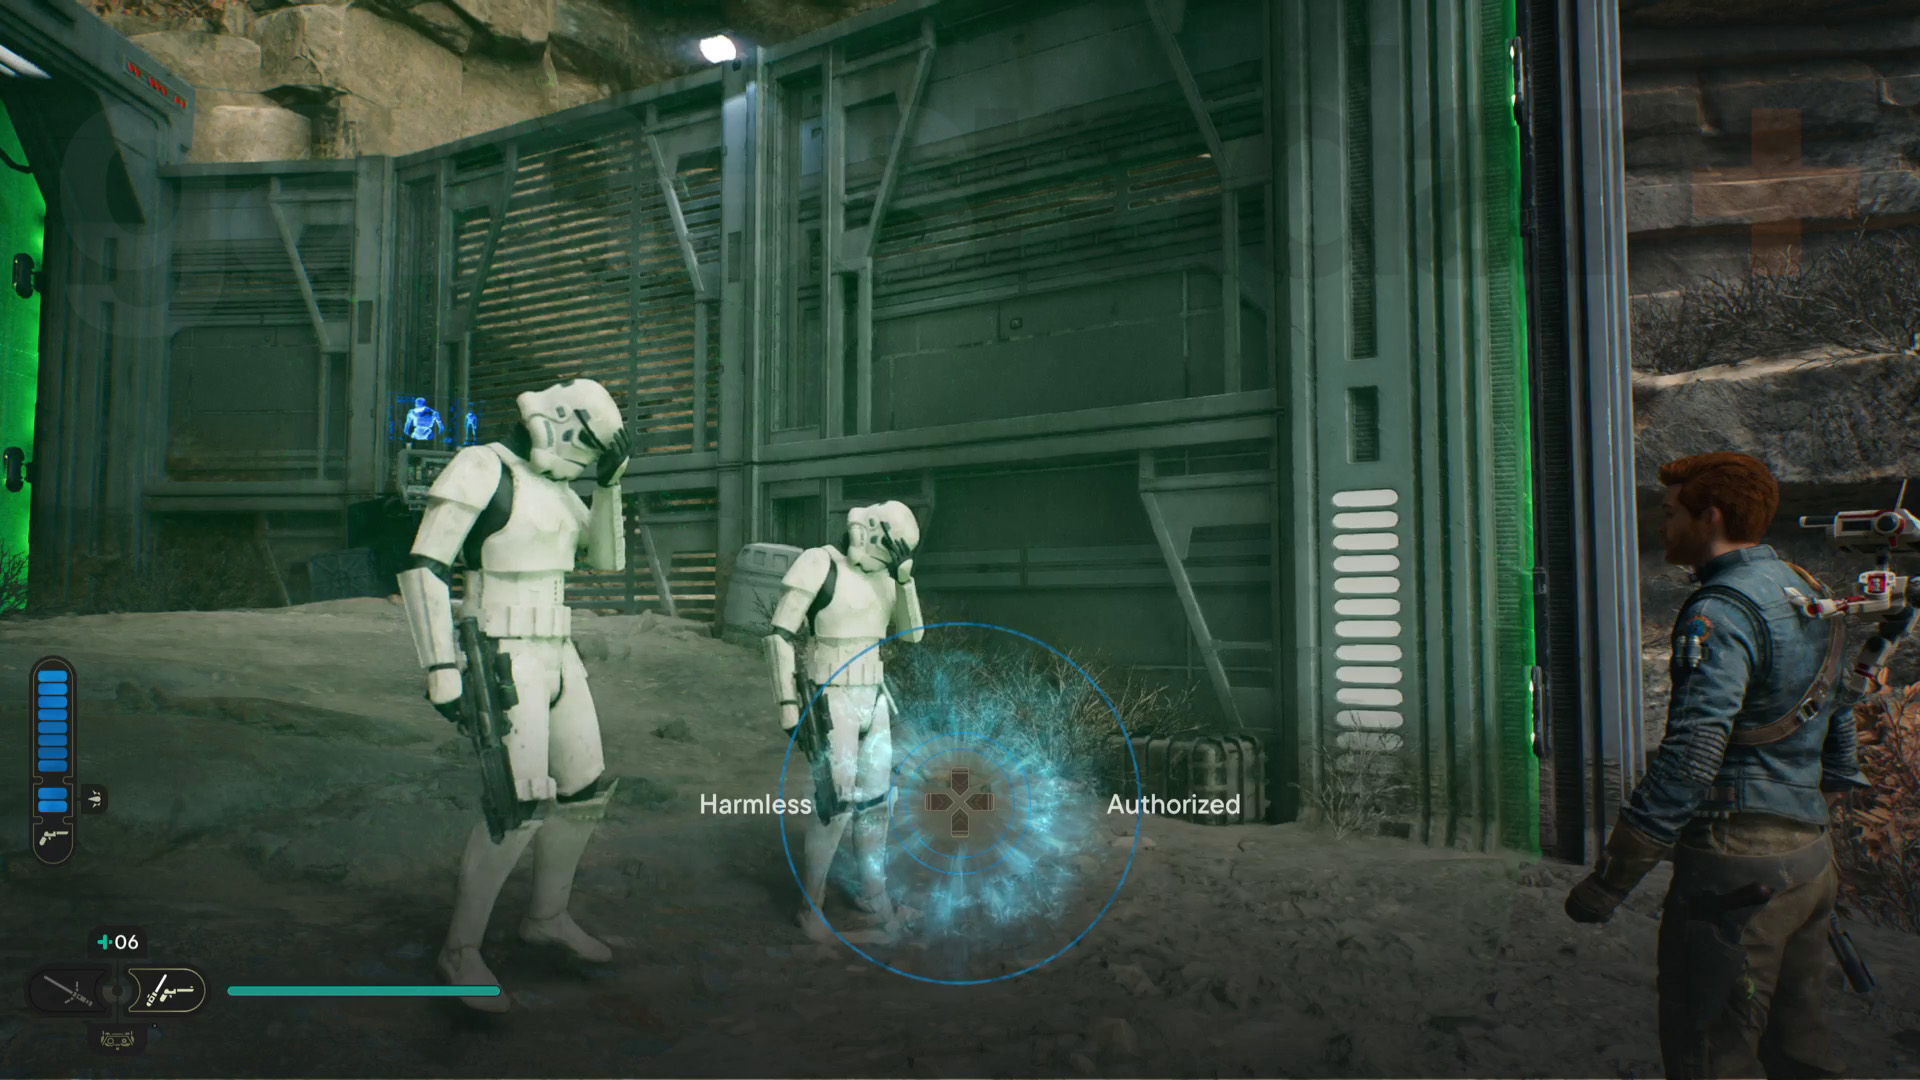 Războiul Stelelor Jedi Survivor Koboh walkthrough Cal executând un truc mental pe doi stormtroopers în spatele unei bariere de laser verde